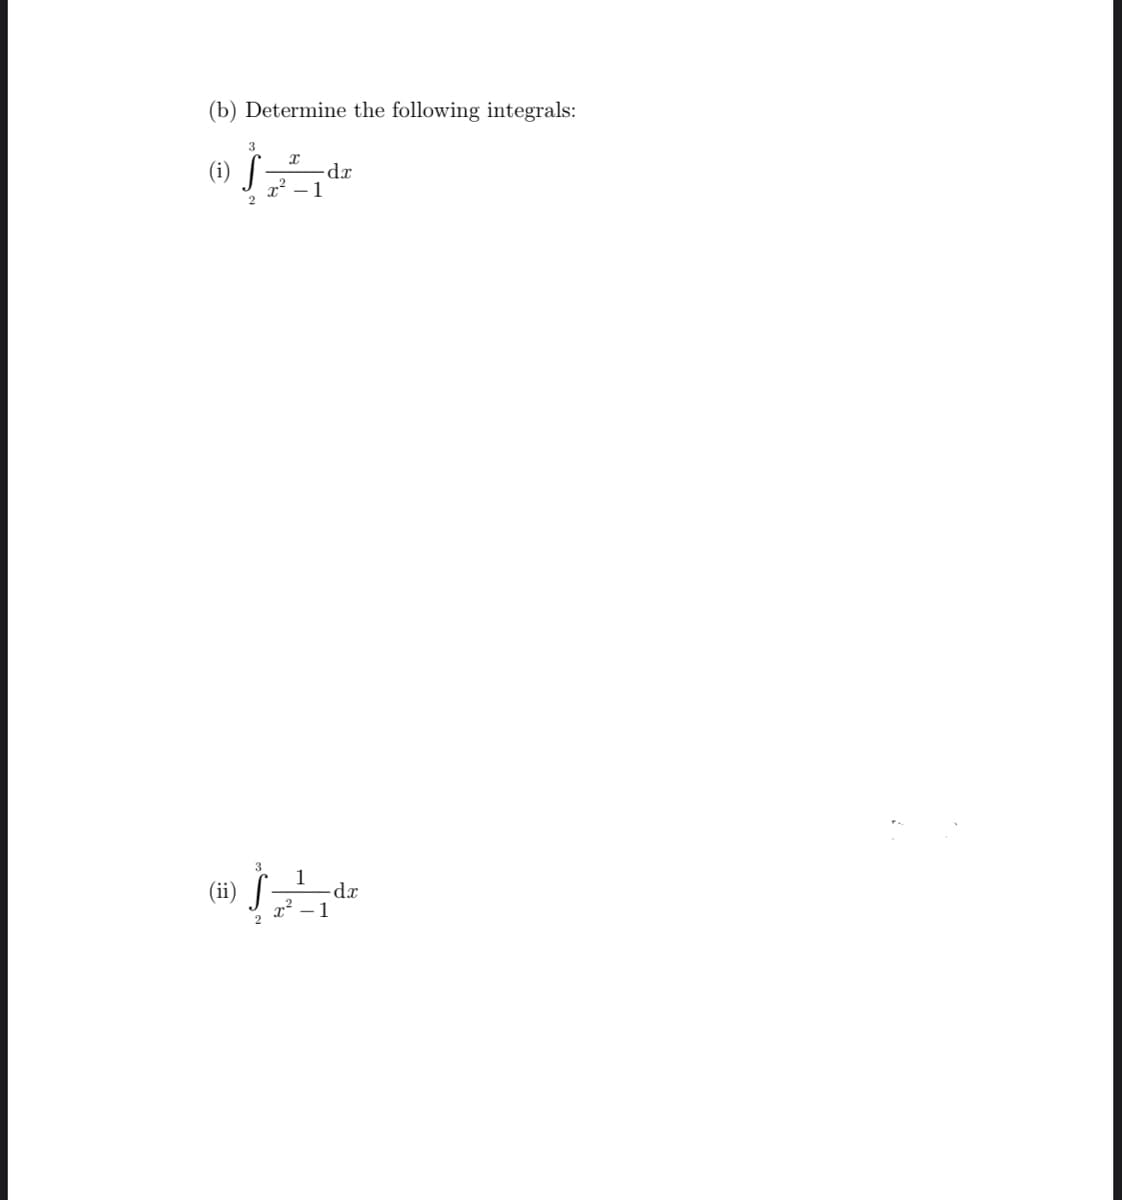 (b) Determine the following integrals:
3
(i) S
2
Т
x² - 1
-dx
1
(4) $_-_-_-_, dz
x² 1